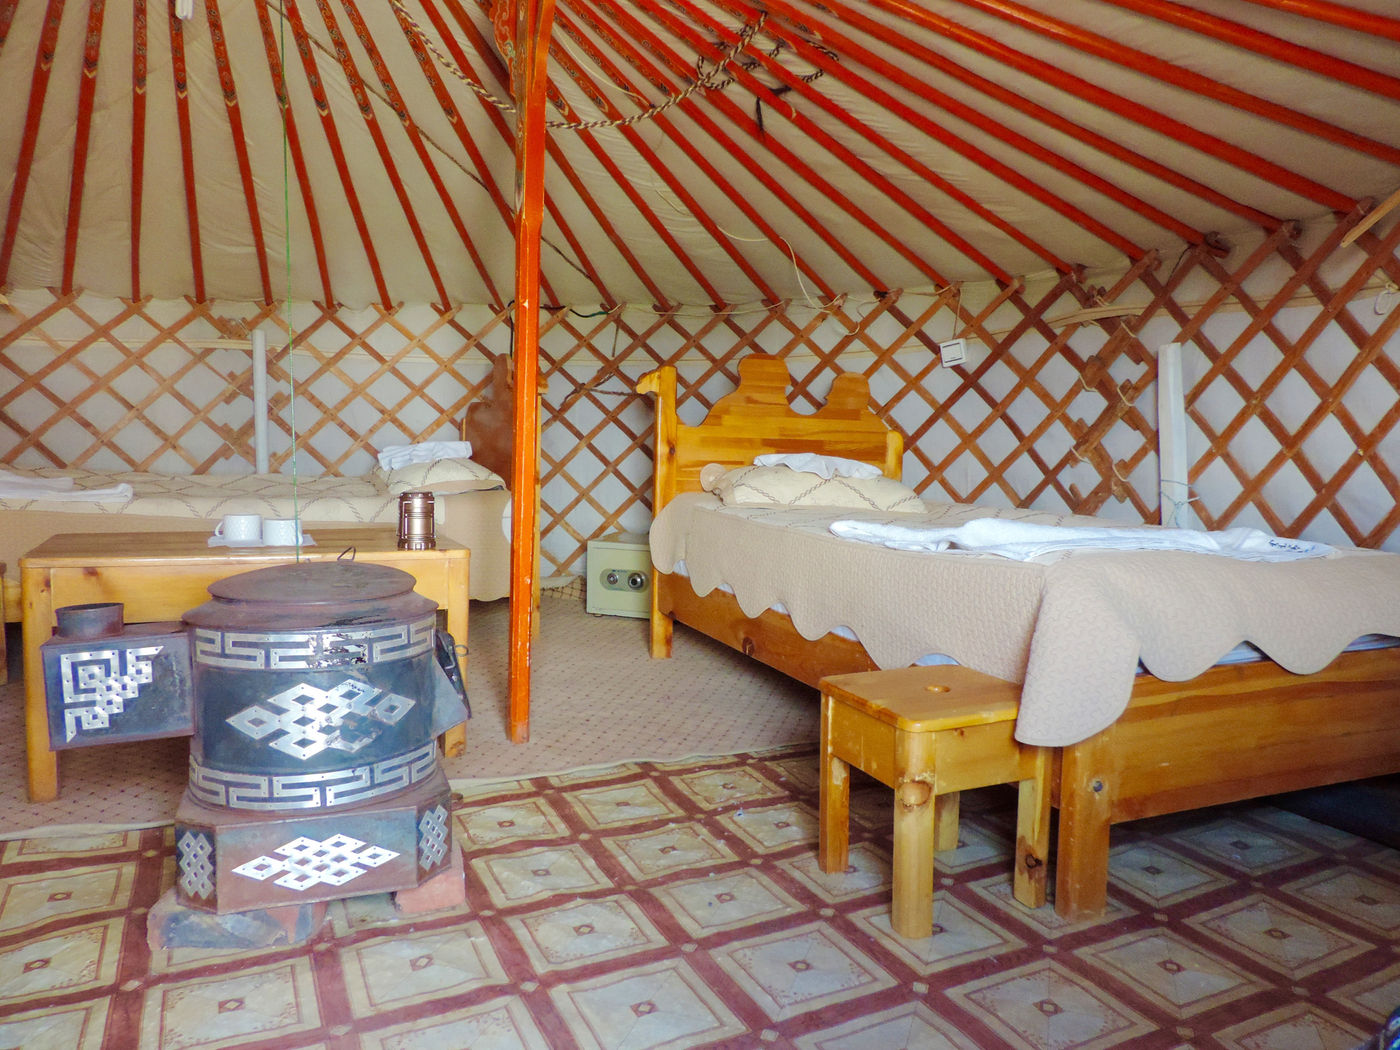 Our accomodation, inside a yurt. © Geert Beckers